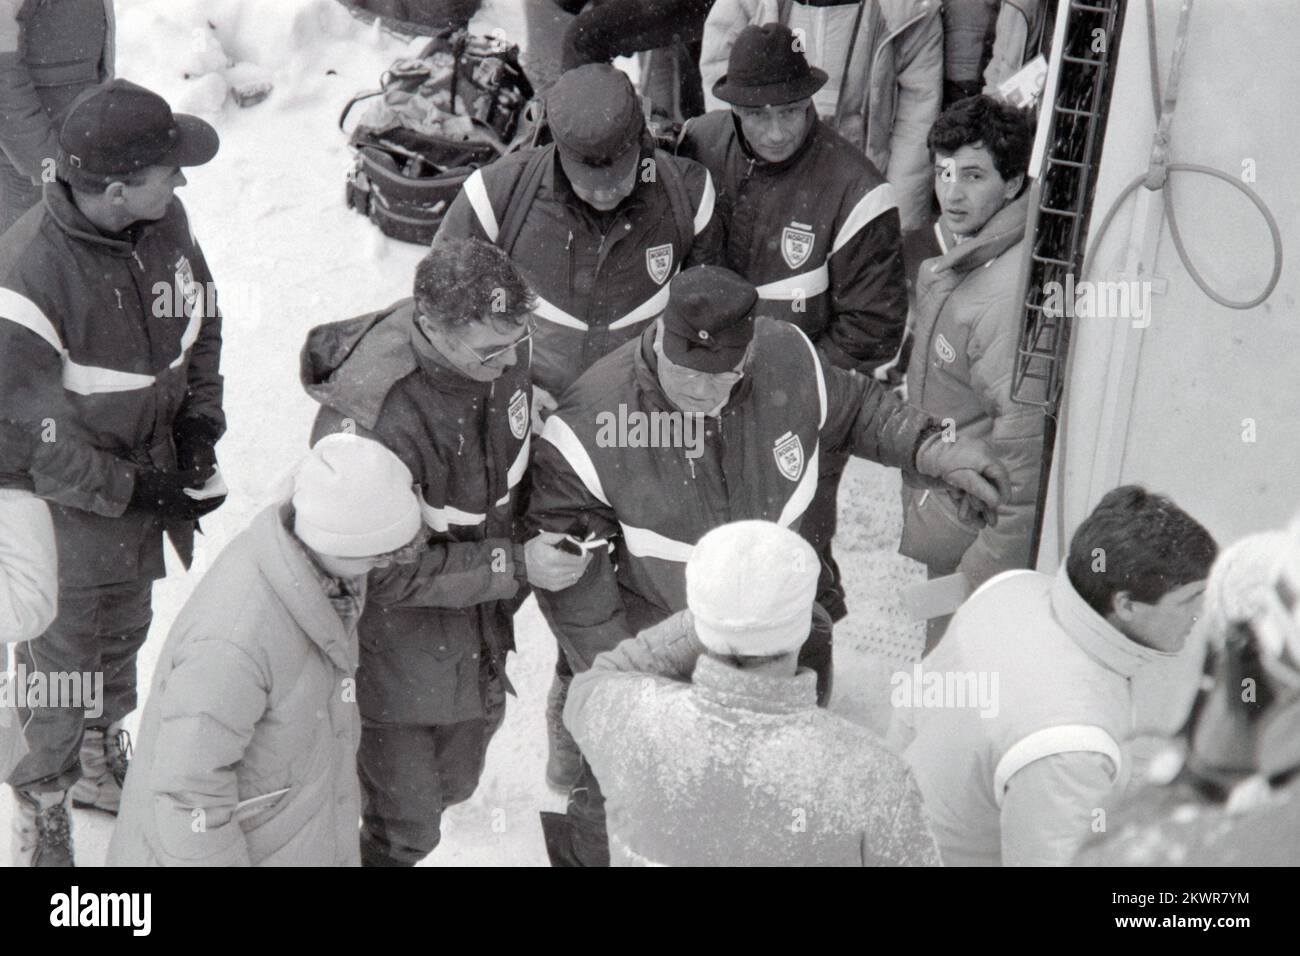 Februar 1984, Sarajewo, Bosnien und Herzegowina - 14. Olympische Winterspiele. König Olaf V von Norwegen besuchte norwegische Skispringer, während sie trainierten. Foto: Ante Jelavic/HaloPix/PIXSELL Stockfoto